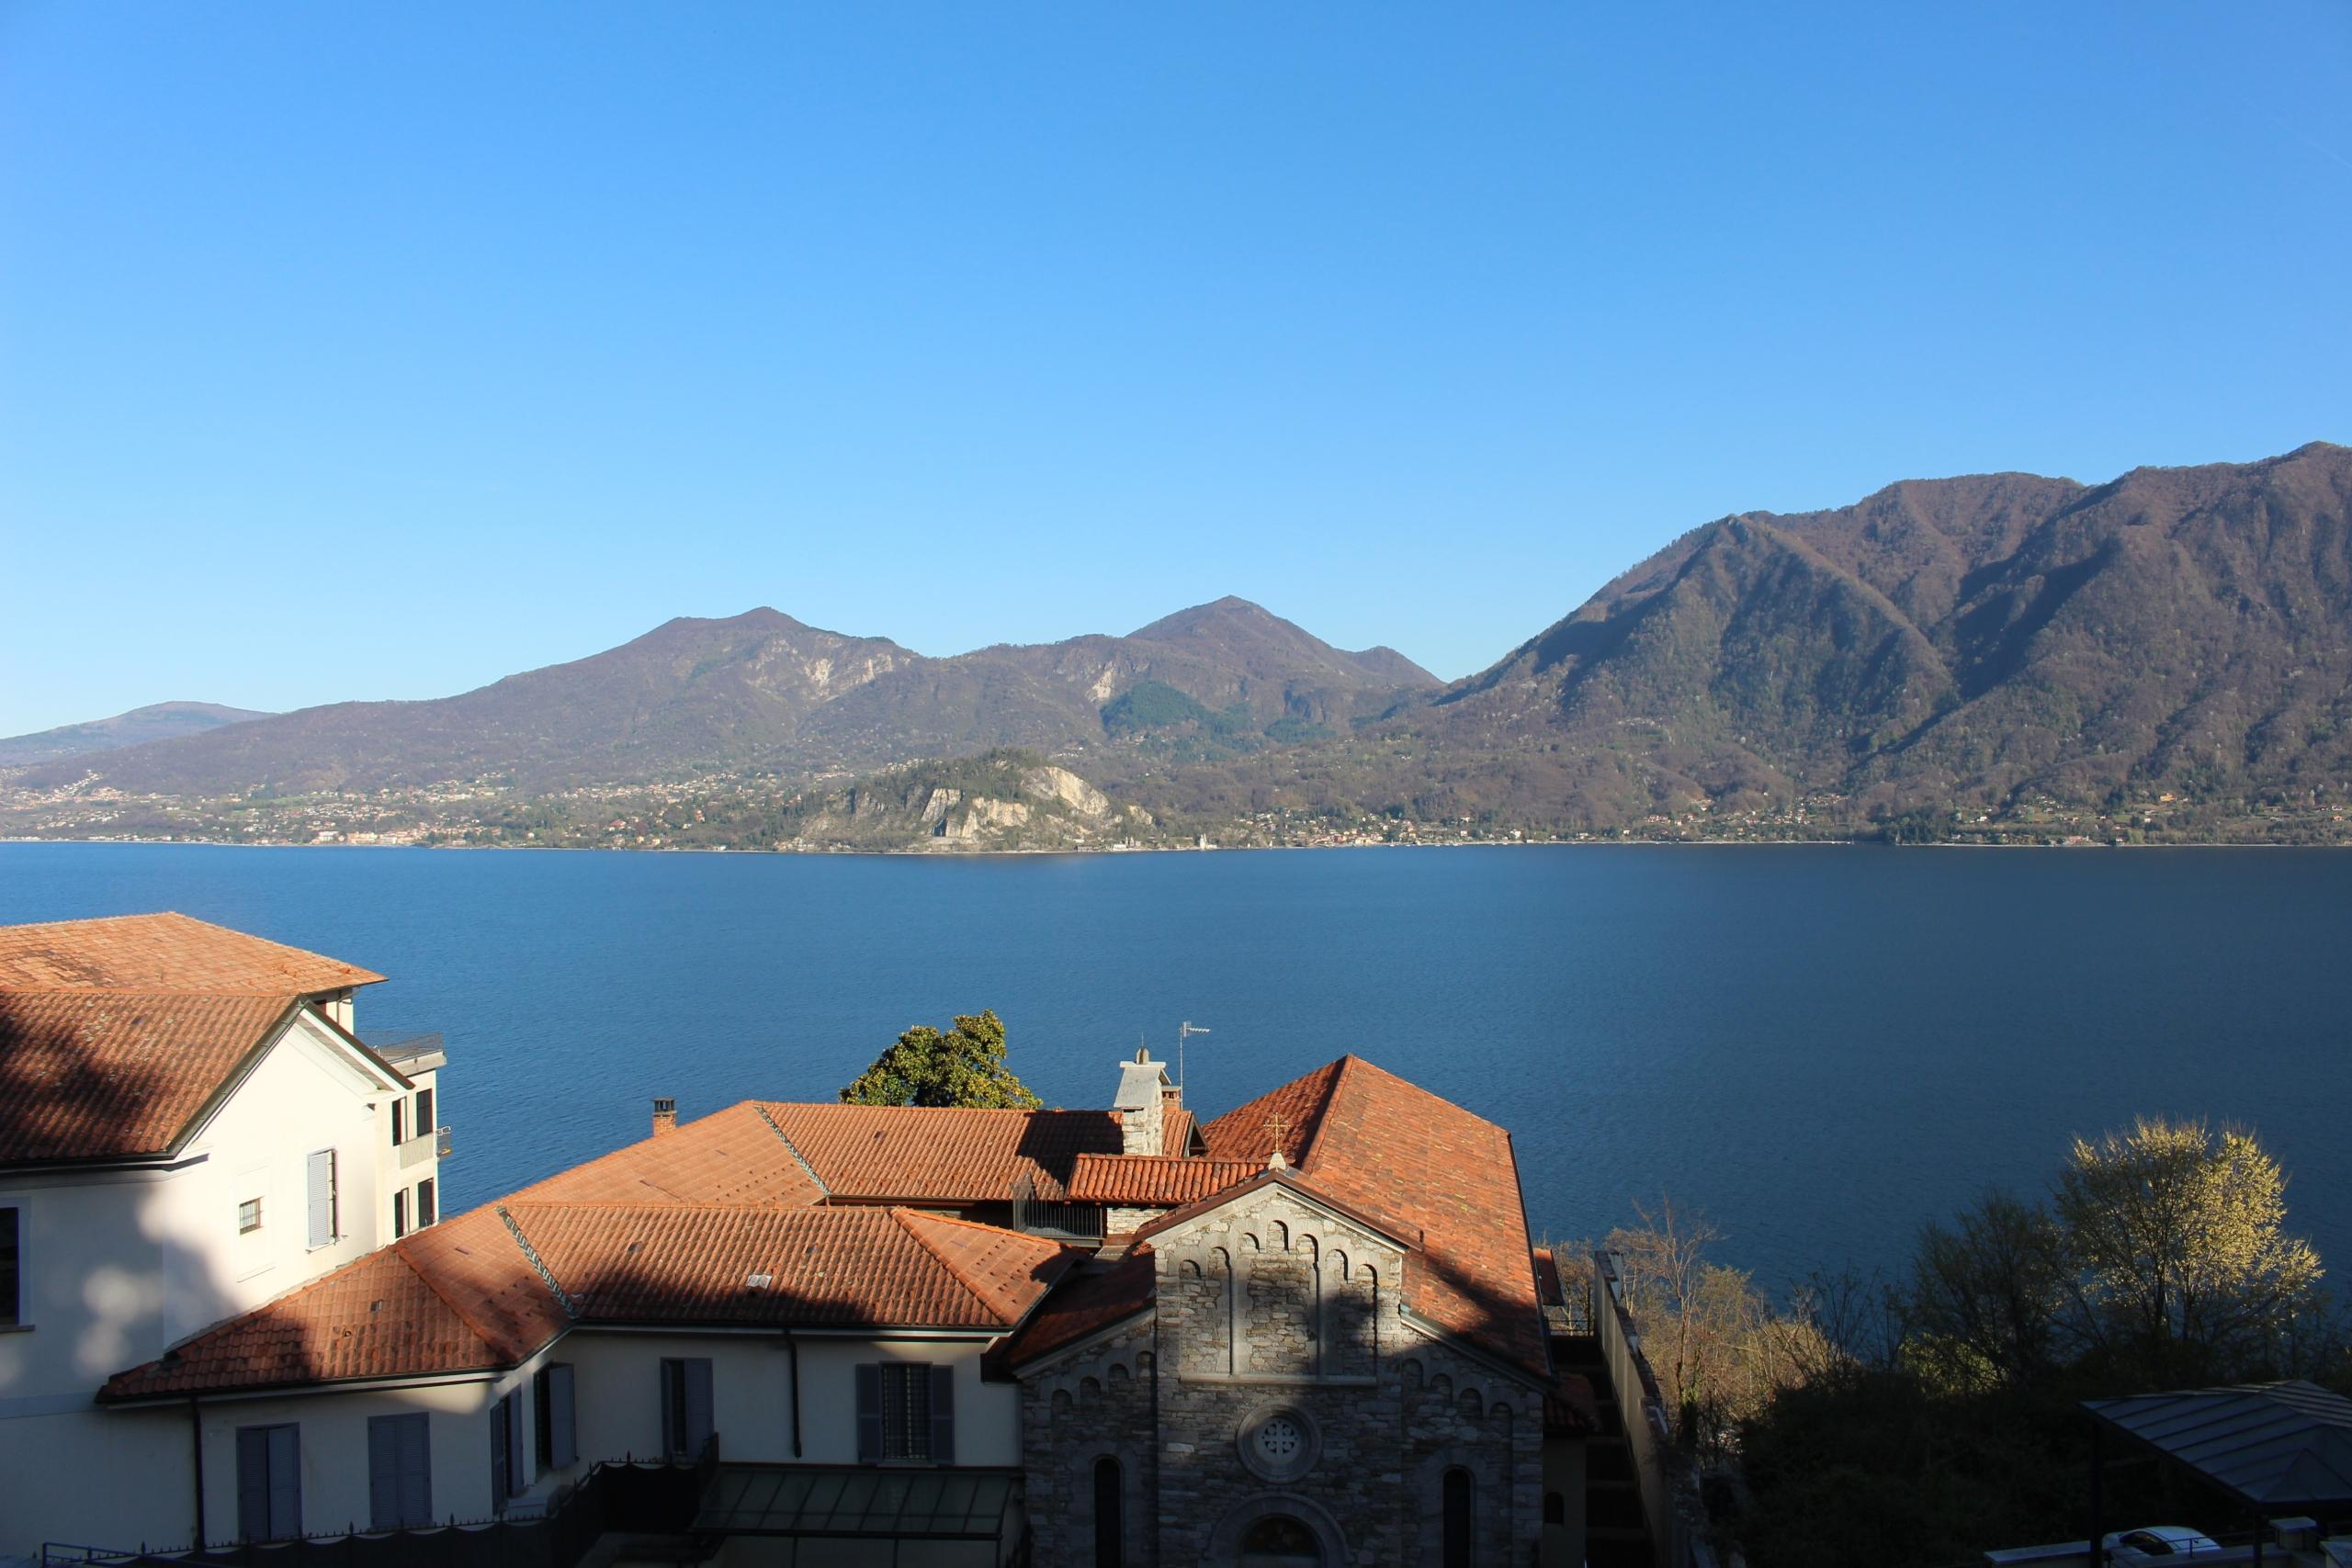 lake-view-holiday-rentals-romantic-casa-bohemia-new-luxury-apartment-ghiffa-verbania-antiche-cure-di-ghiffa-lake-maggiore-verbania